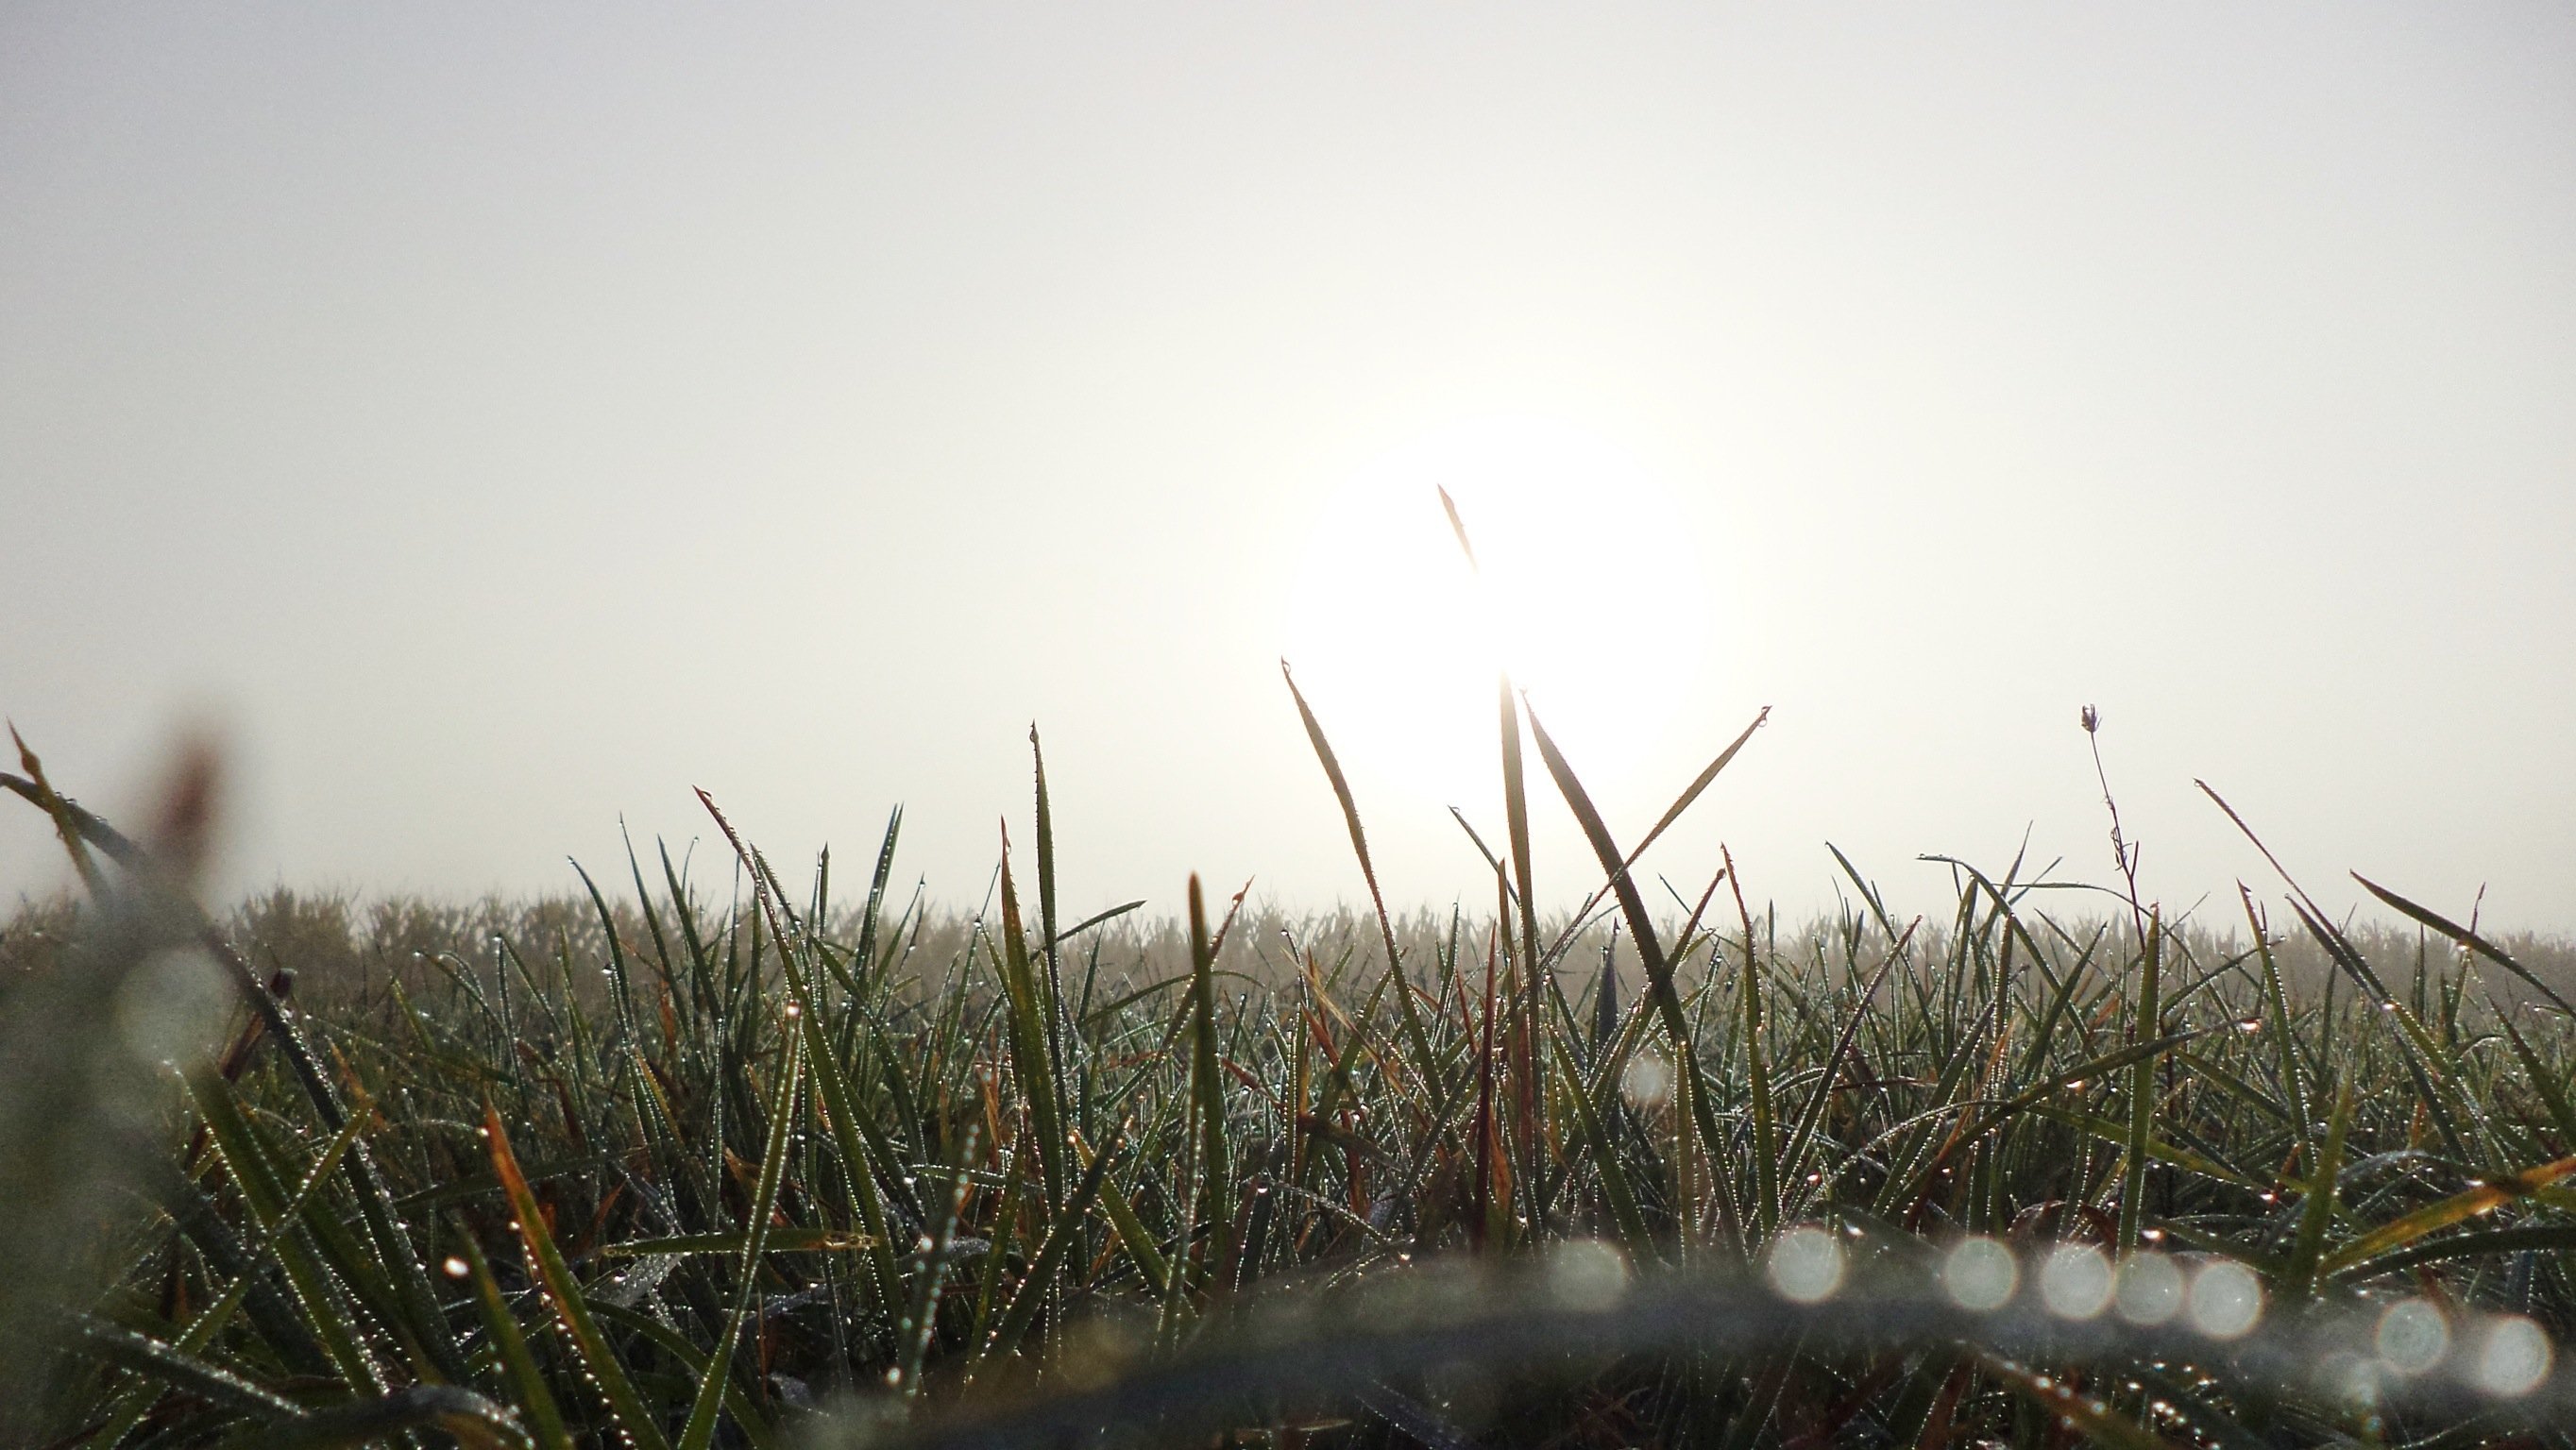 Пелена трава. Трава в тумане. Высокая трава в тумане. Поле с высокой травой в тумане. Туман зеленая трава.